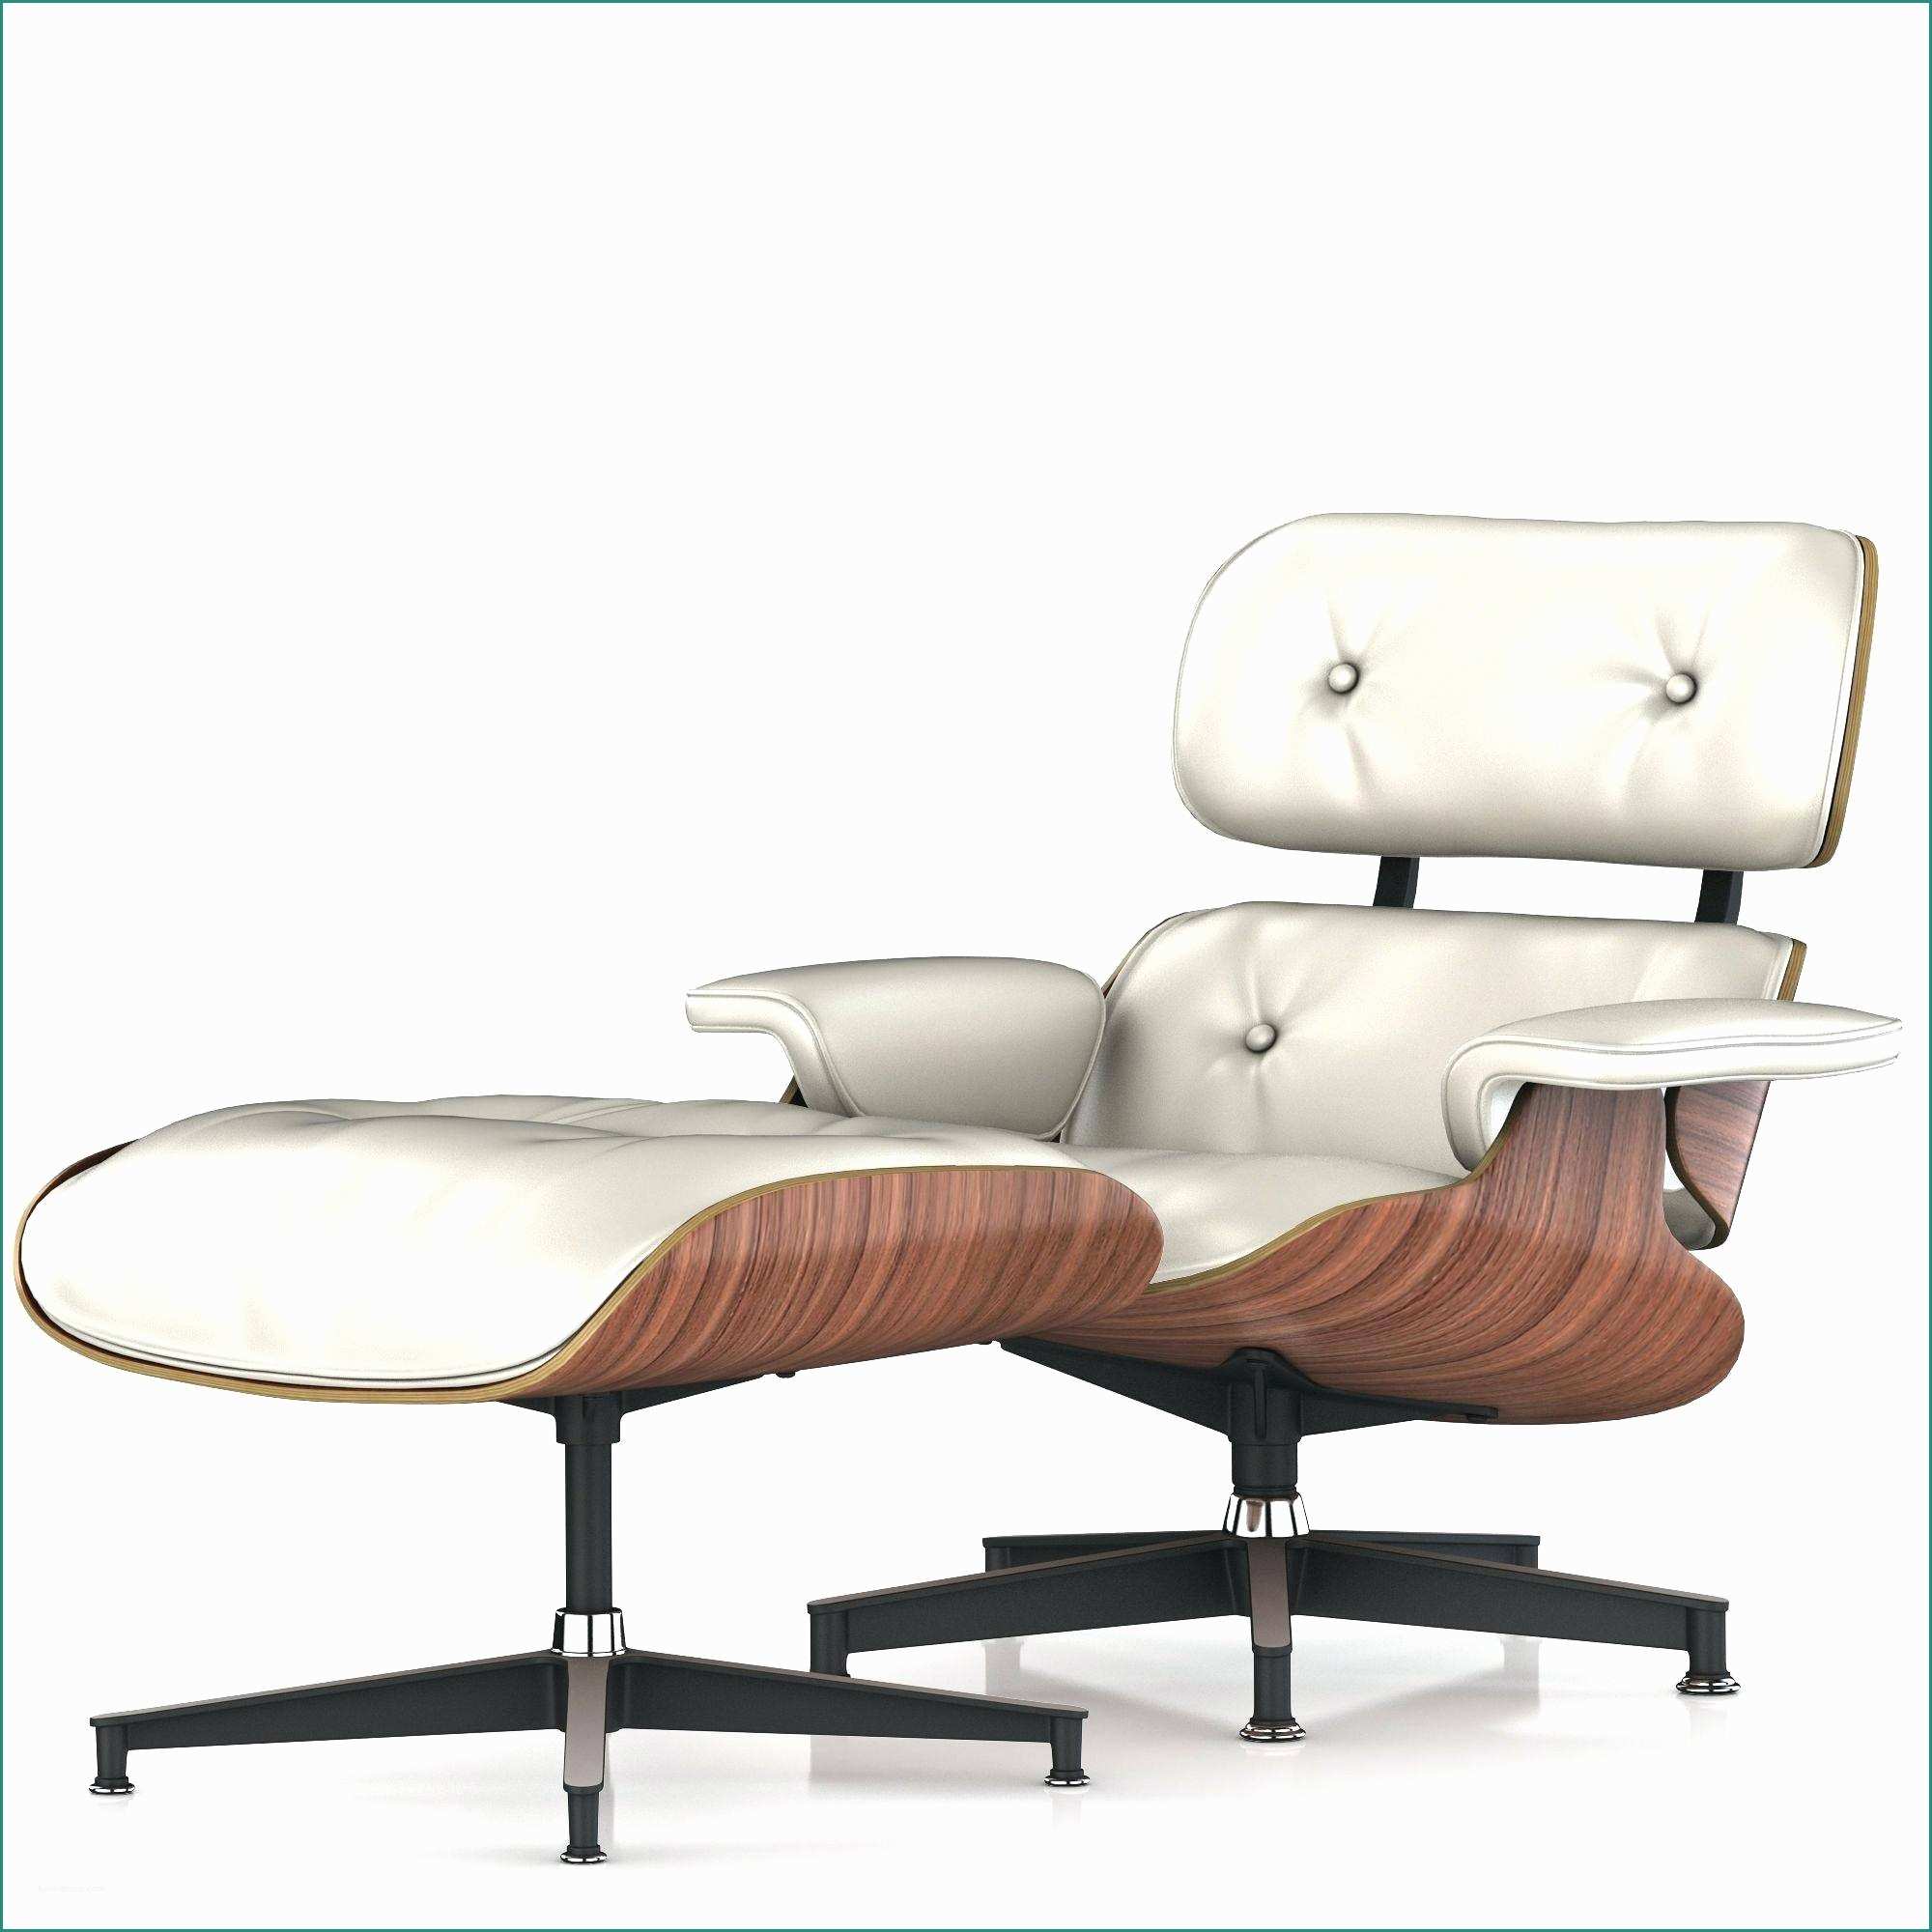 Sedia Charles Eames E 35 Incredibile Sedia Herman Miller